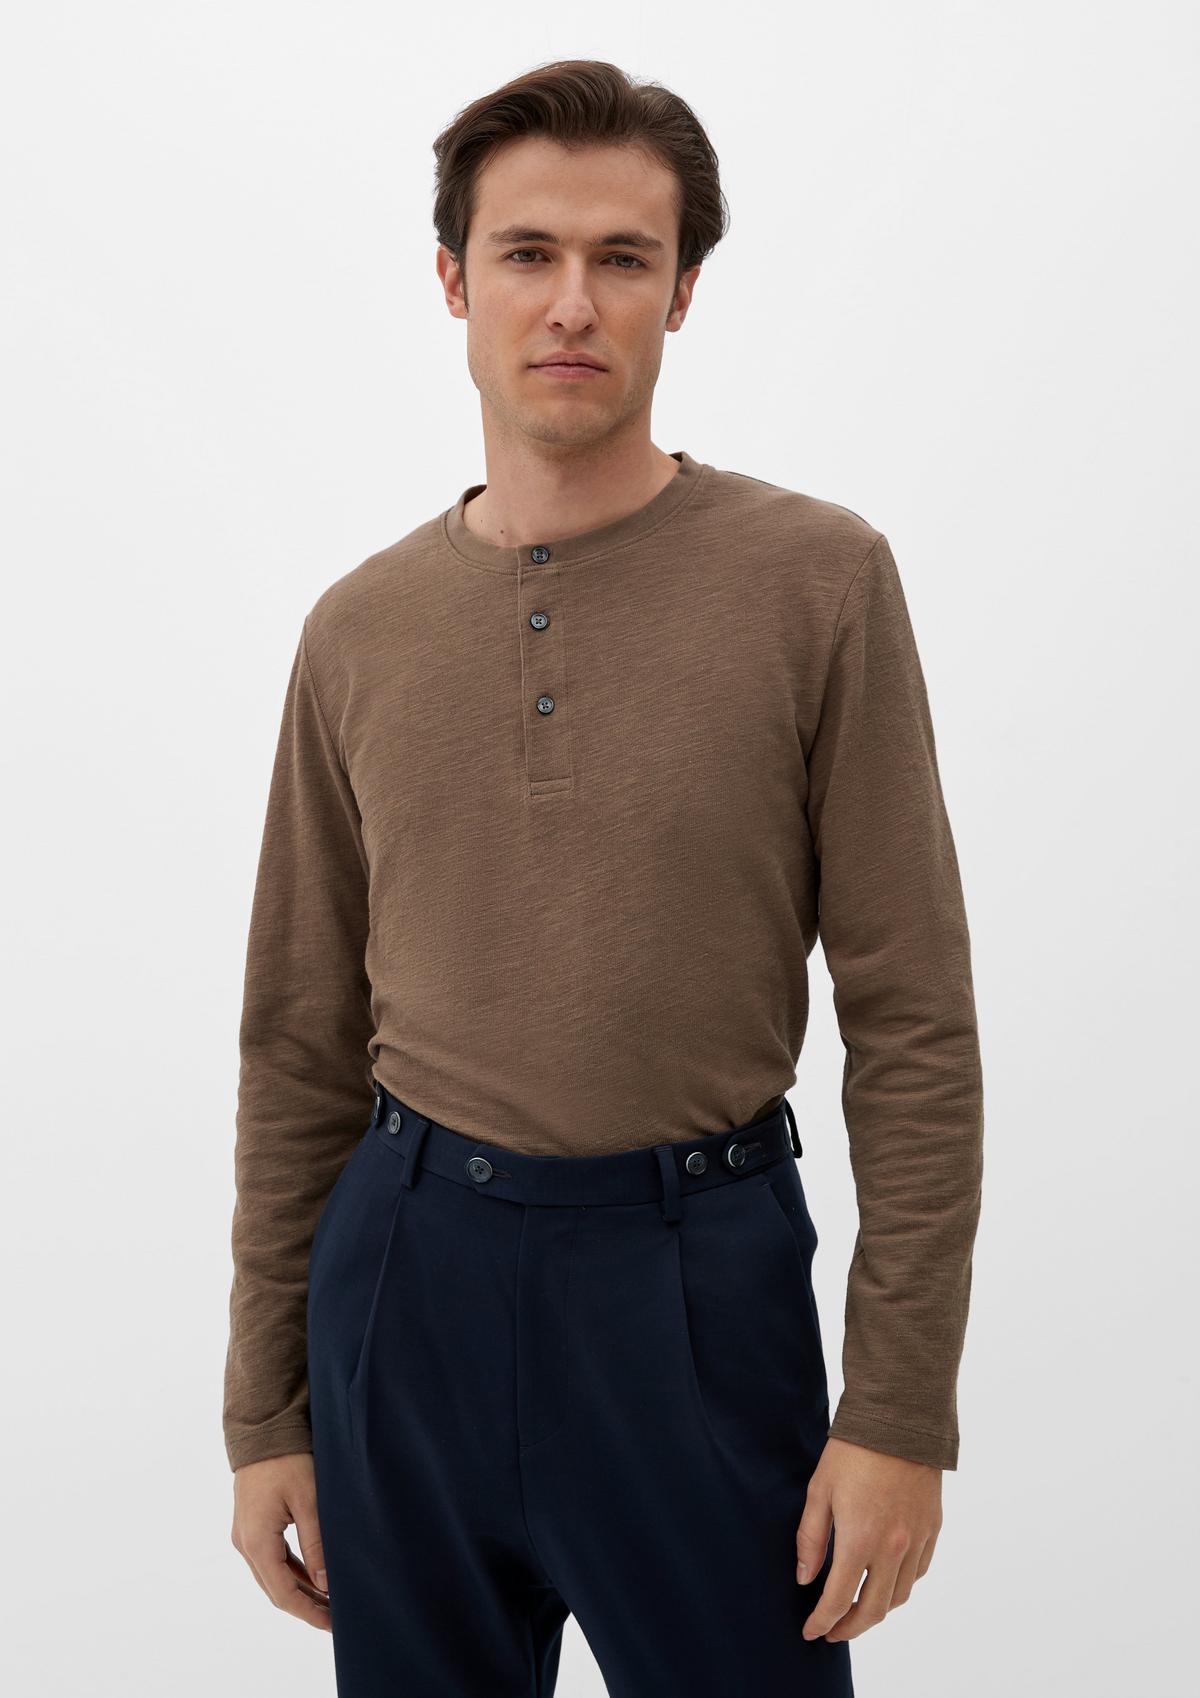 s.Oliver Sweatshirt with a Henley neckline